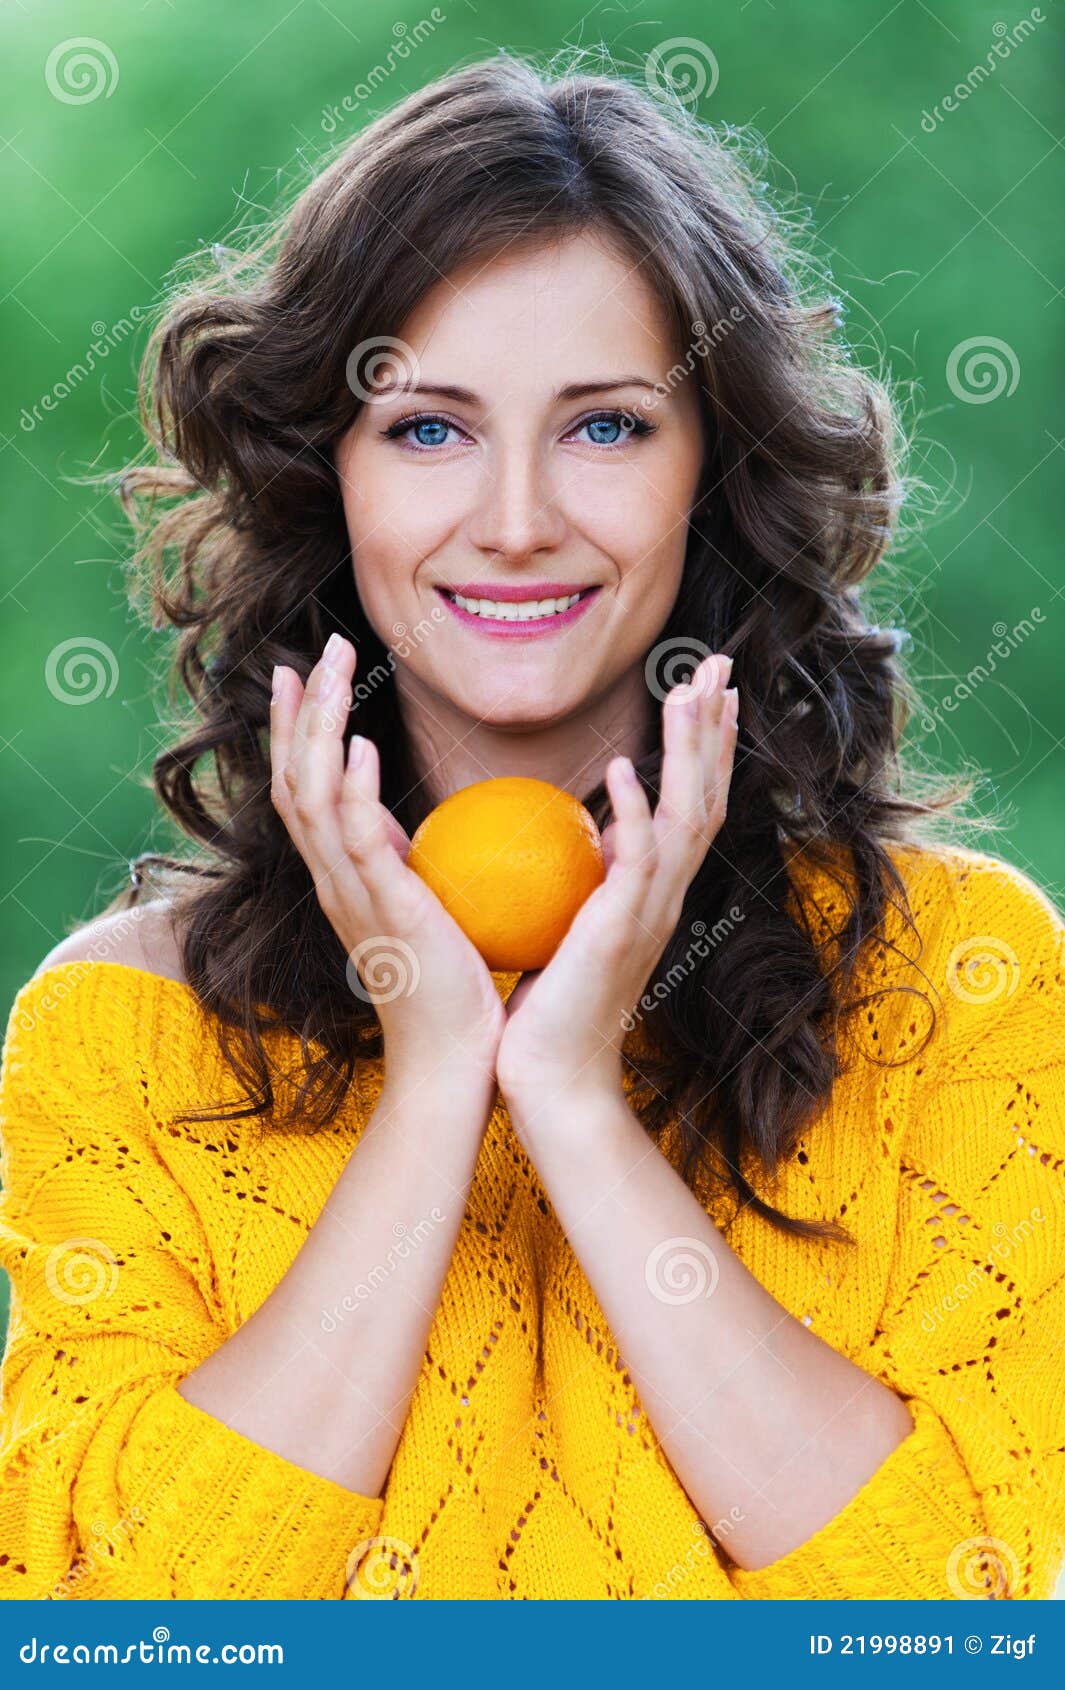 Charming woman. Девушка с мандаринами. Девушки мандарини. Фотосессия кудрявая девушка с апельсинами. Брюнетка с мандаринами.